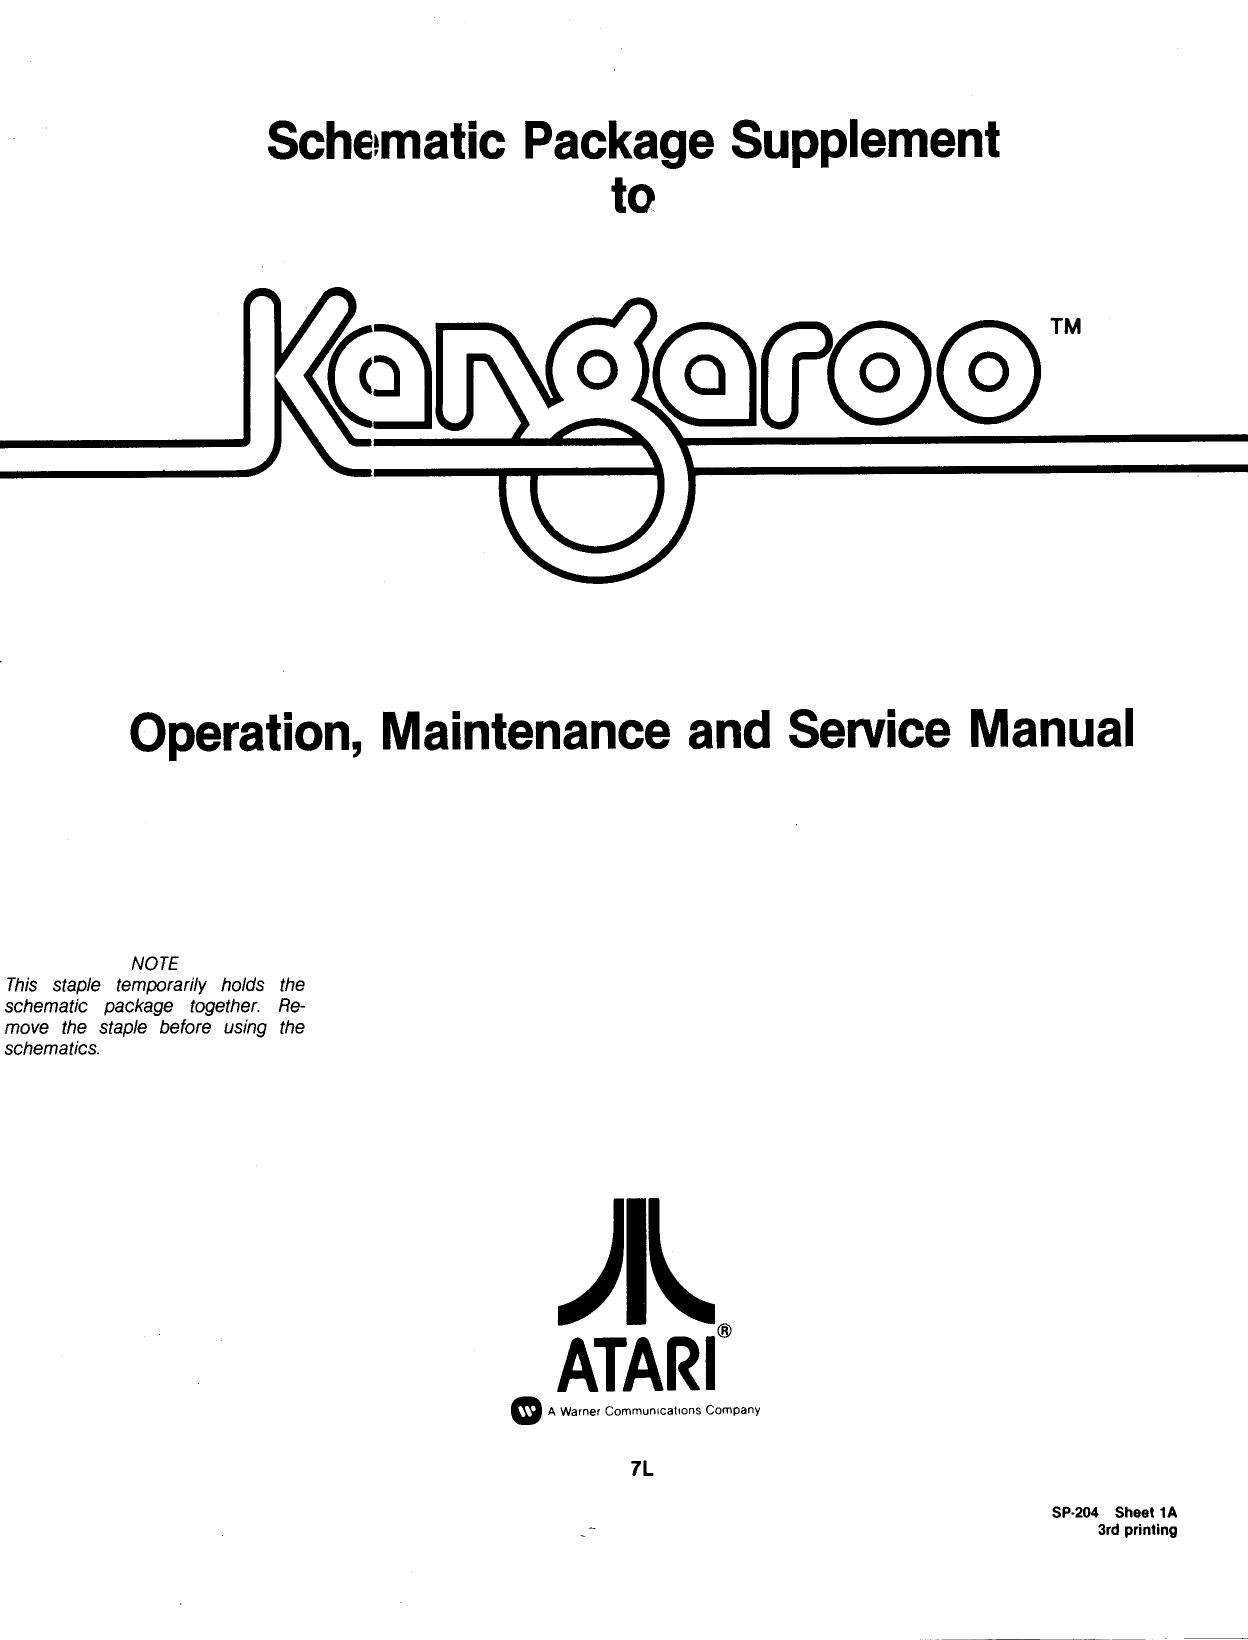 Kangaroo SP-204 3rd Printing